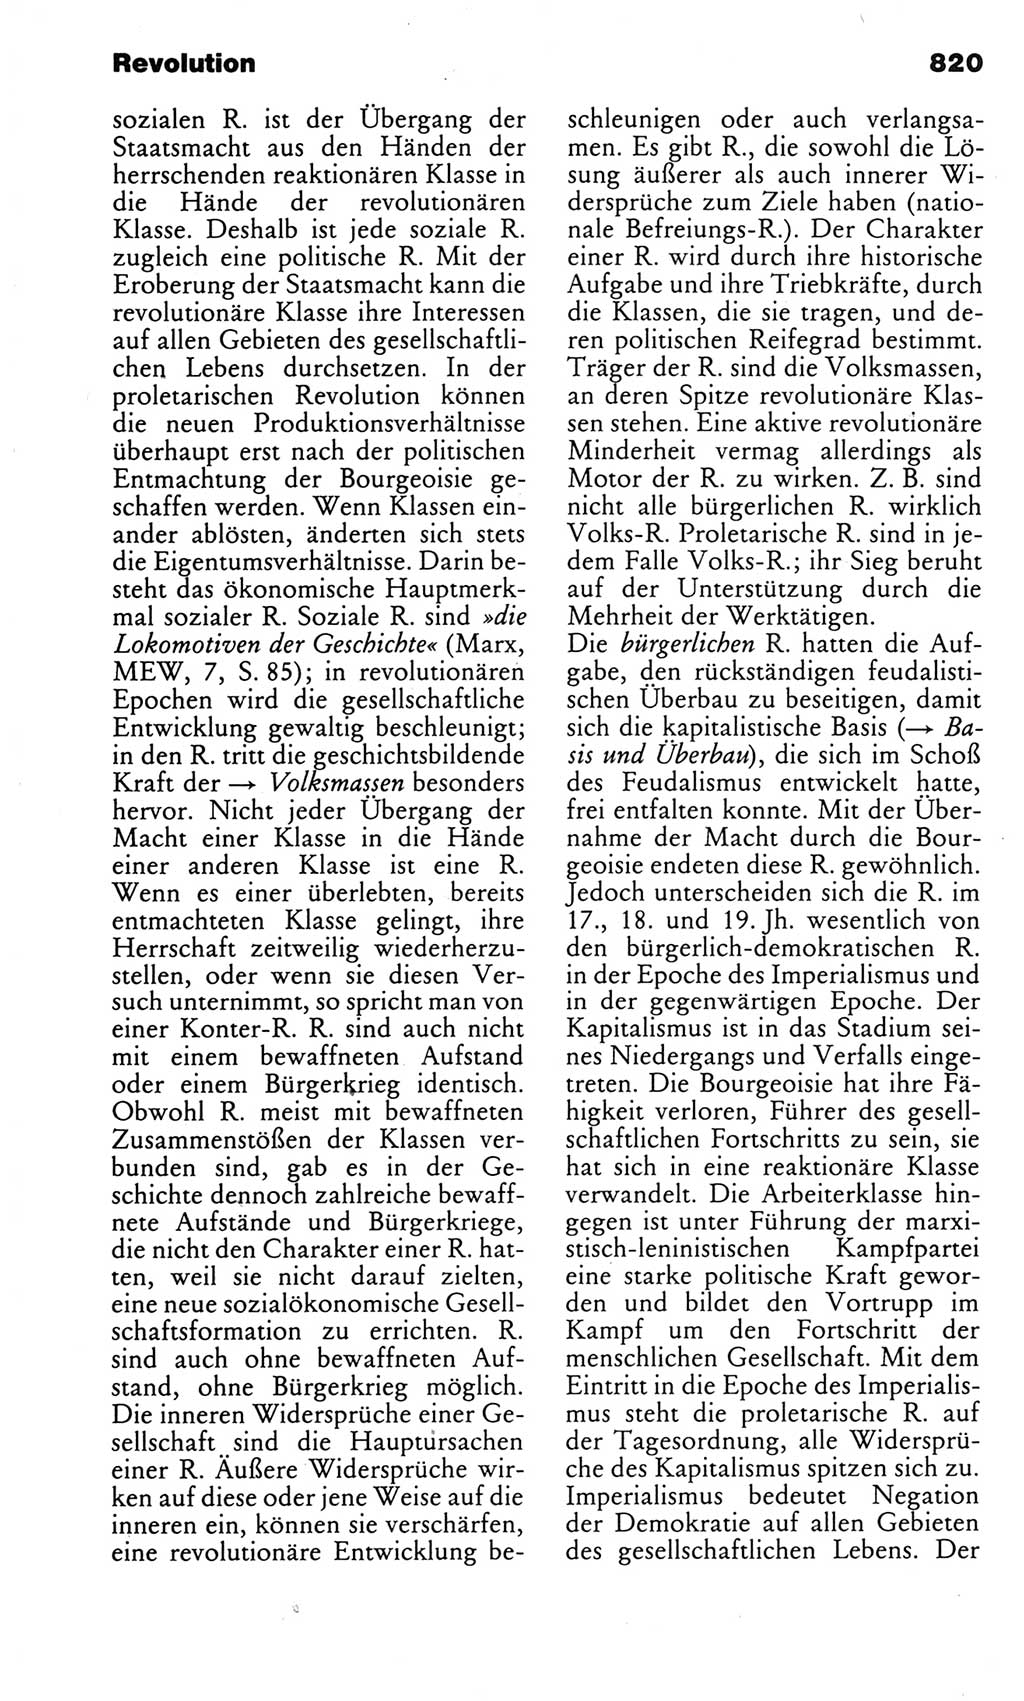 Kleines politisches Wörterbuch [Deutsche Demokratische Republik (DDR)] 1983, Seite 820 (Kl. pol. Wb. DDR 1983, S. 820)